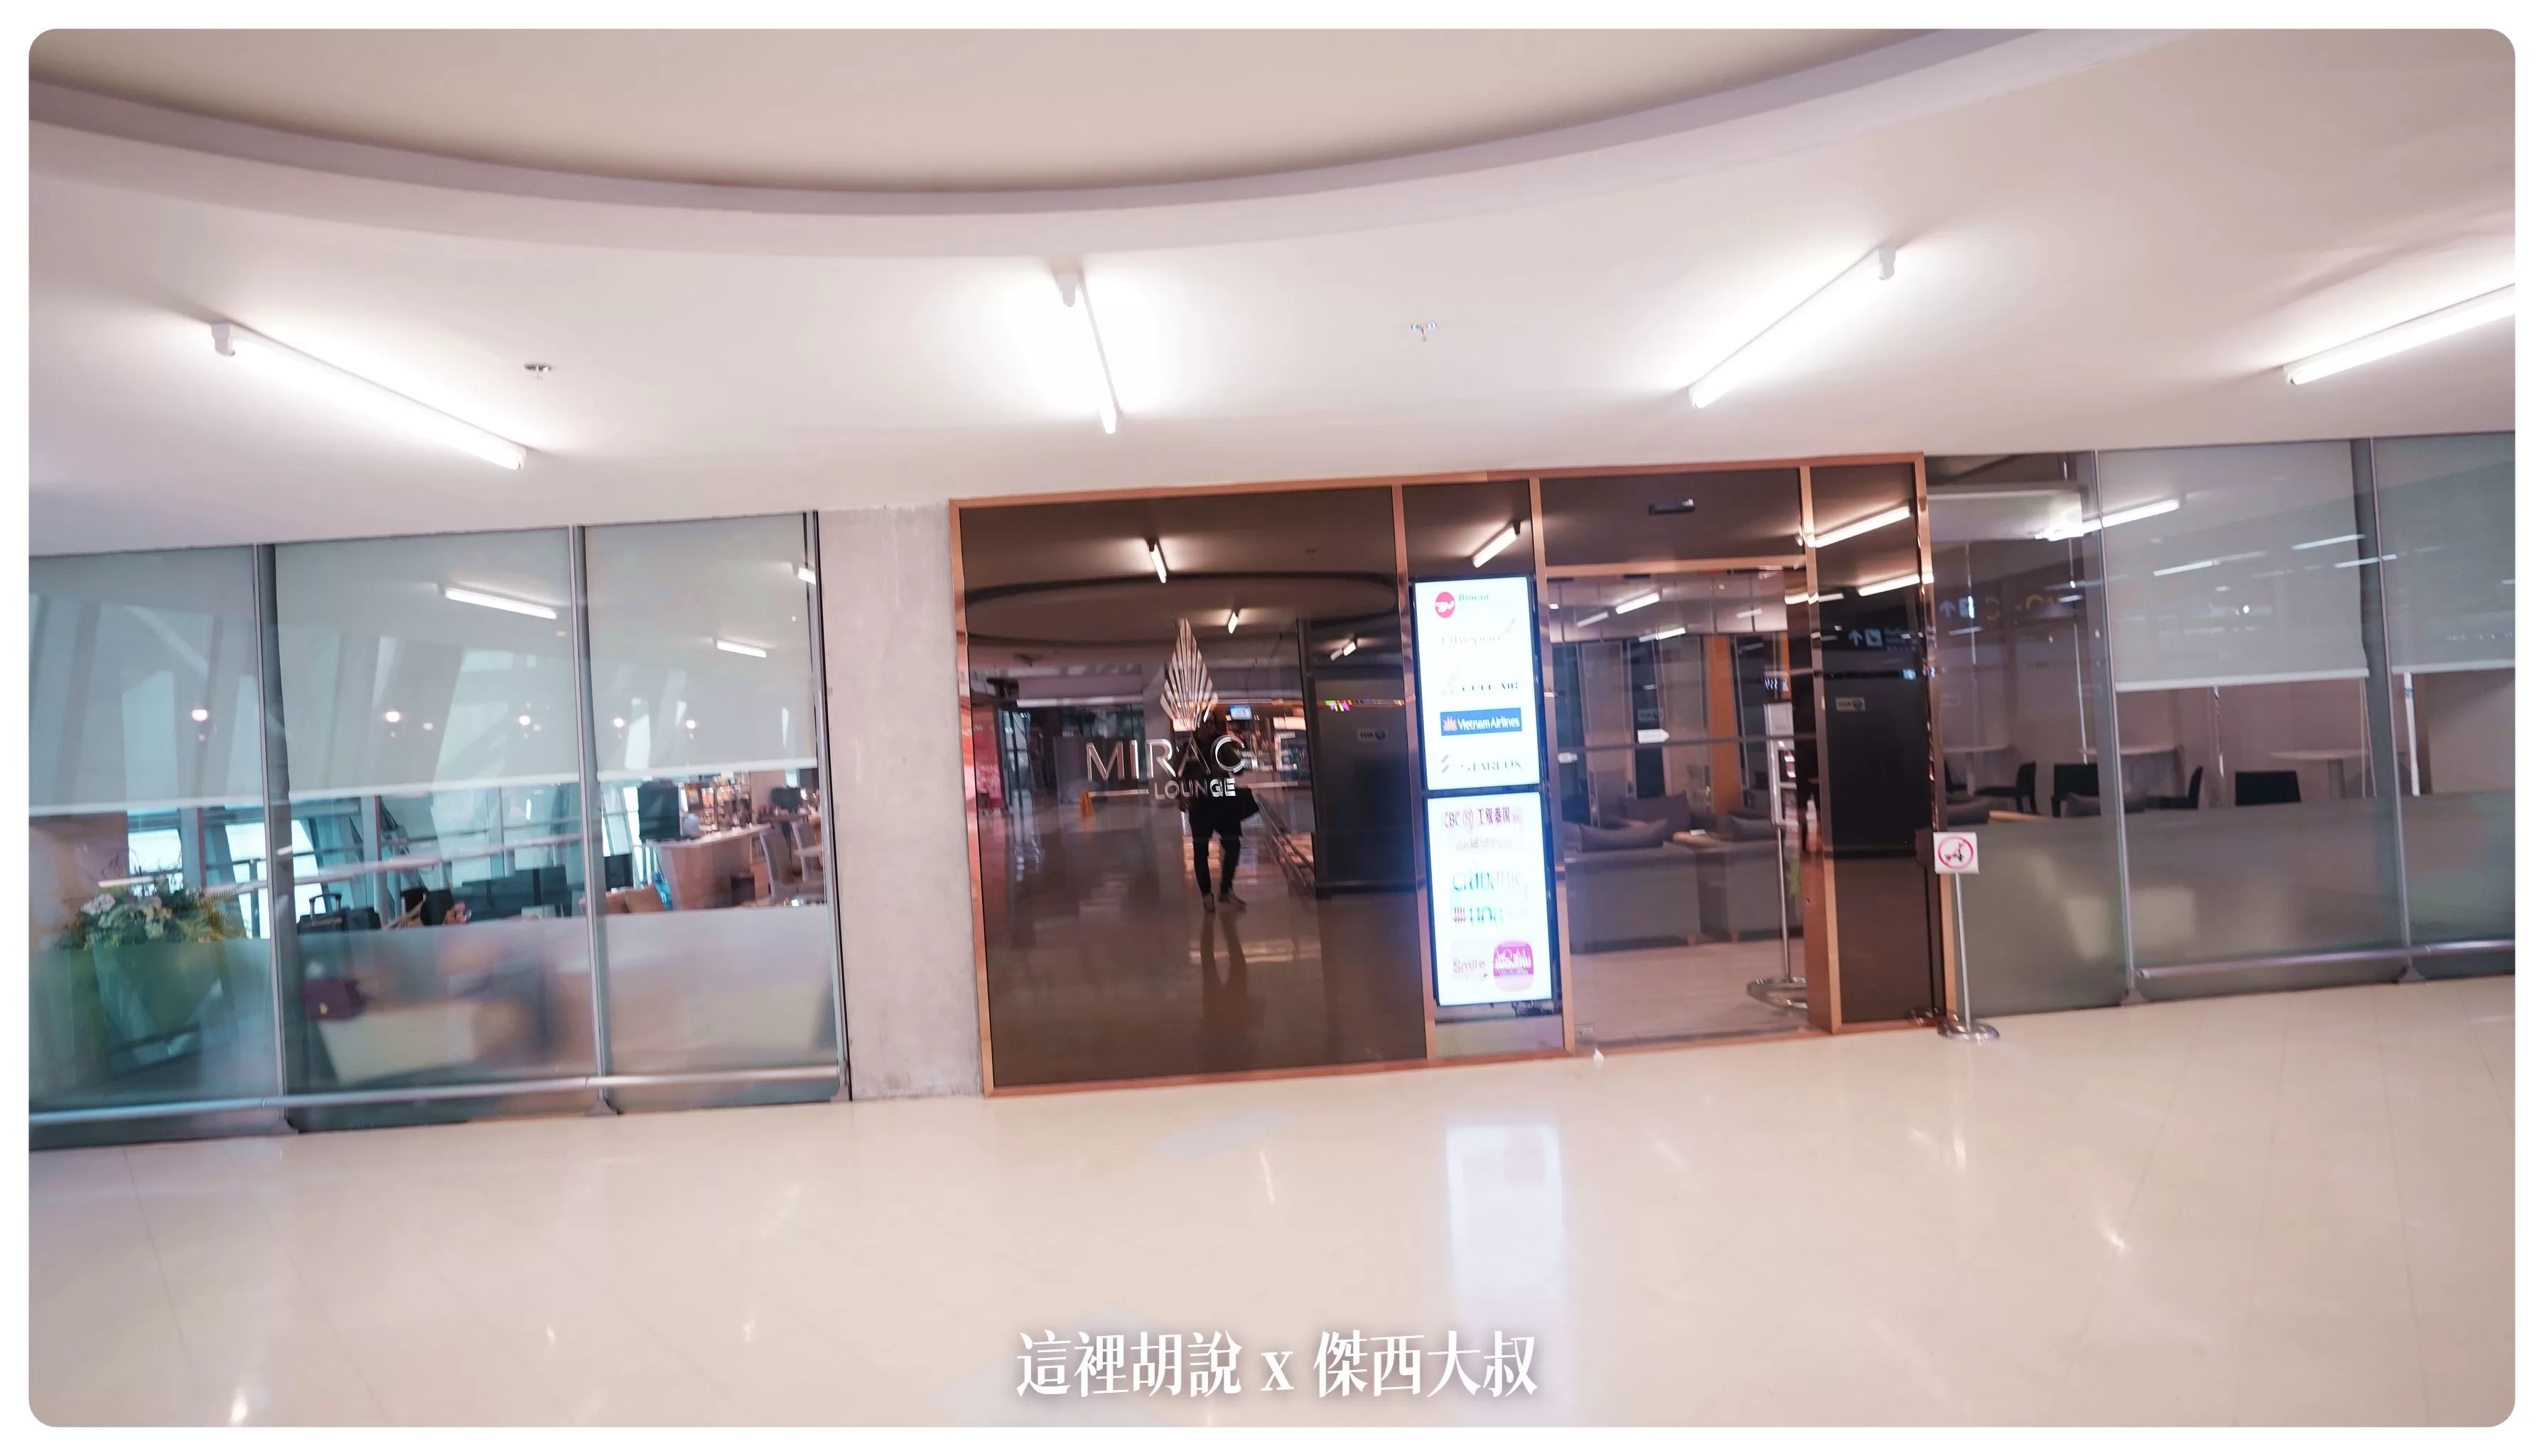 MIRACLE,MIRACLE 貴賓室,Suvarnabhumi Airport,曼谷,泰國曼谷機場,照片記錄,蘇凡納布機場